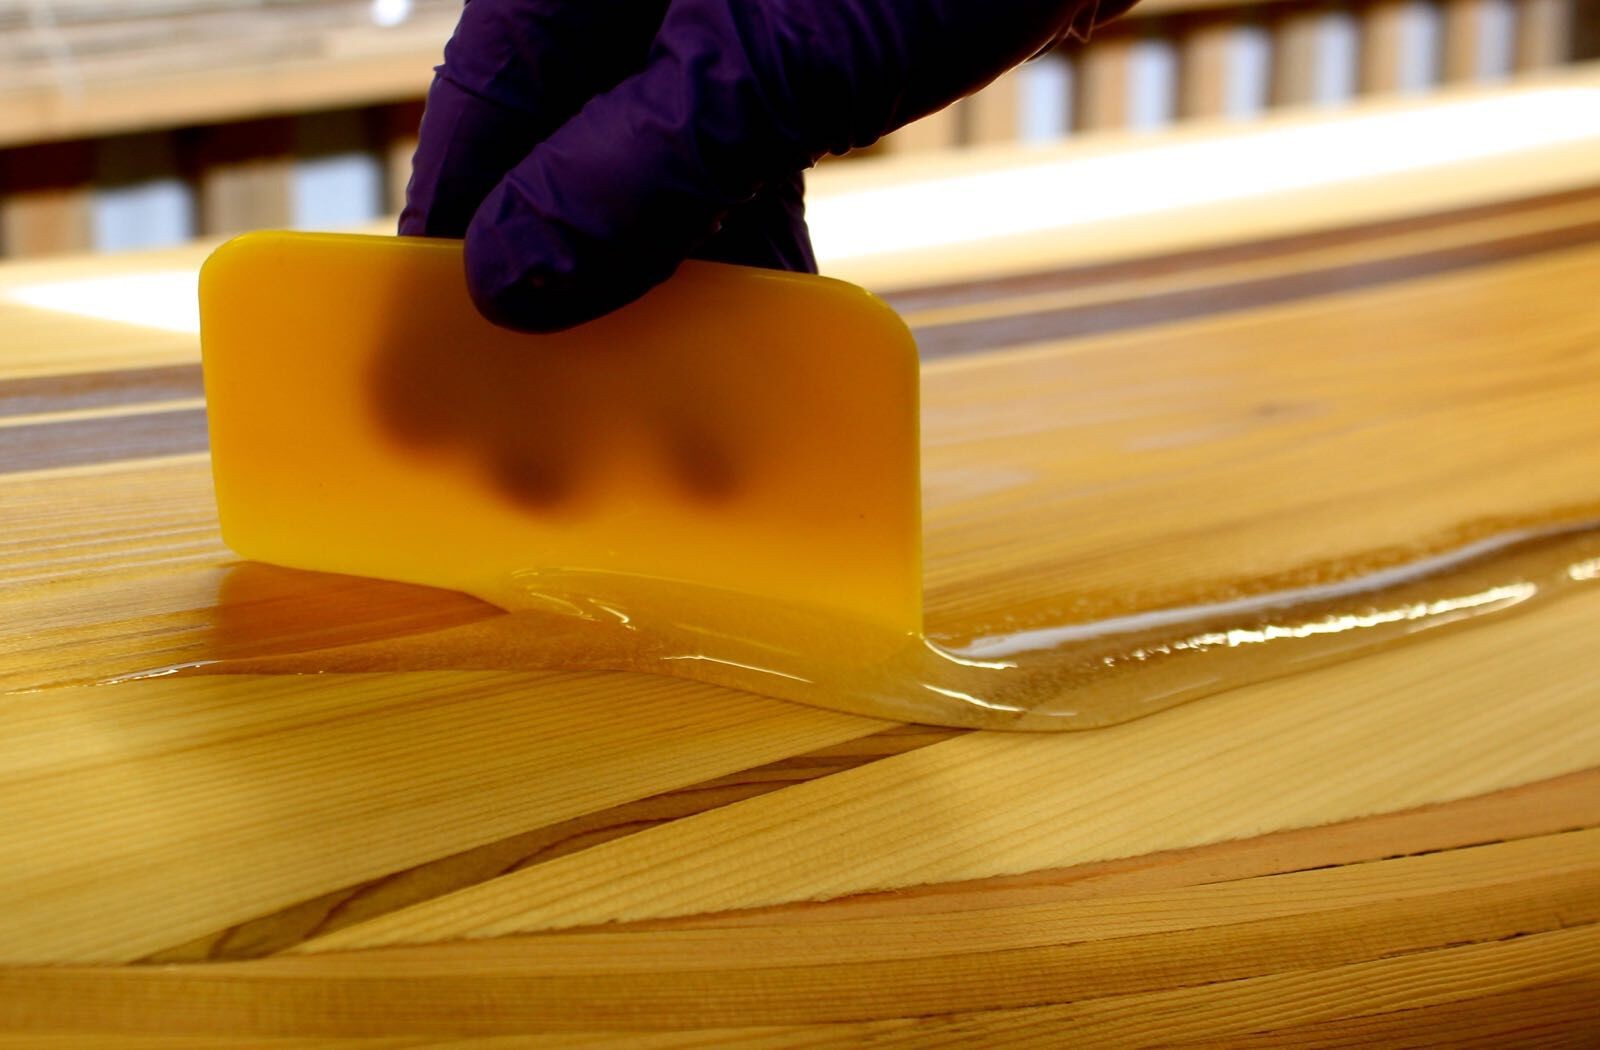 खरीदने के लिए epoxy राल और hardener के लिए लकड़ी तालिका कोटिंग,epoxy राल और hardener के लिए लकड़ी तालिका कोटिंग दाम,epoxy राल और hardener के लिए लकड़ी तालिका कोटिंग ब्रांड,epoxy राल और hardener के लिए लकड़ी तालिका कोटिंग मैन्युफैक्चरर्स,epoxy राल और hardener के लिए लकड़ी तालिका कोटिंग उद्धृत मूल्य,epoxy राल और hardener के लिए लकड़ी तालिका कोटिंग कंपनी,